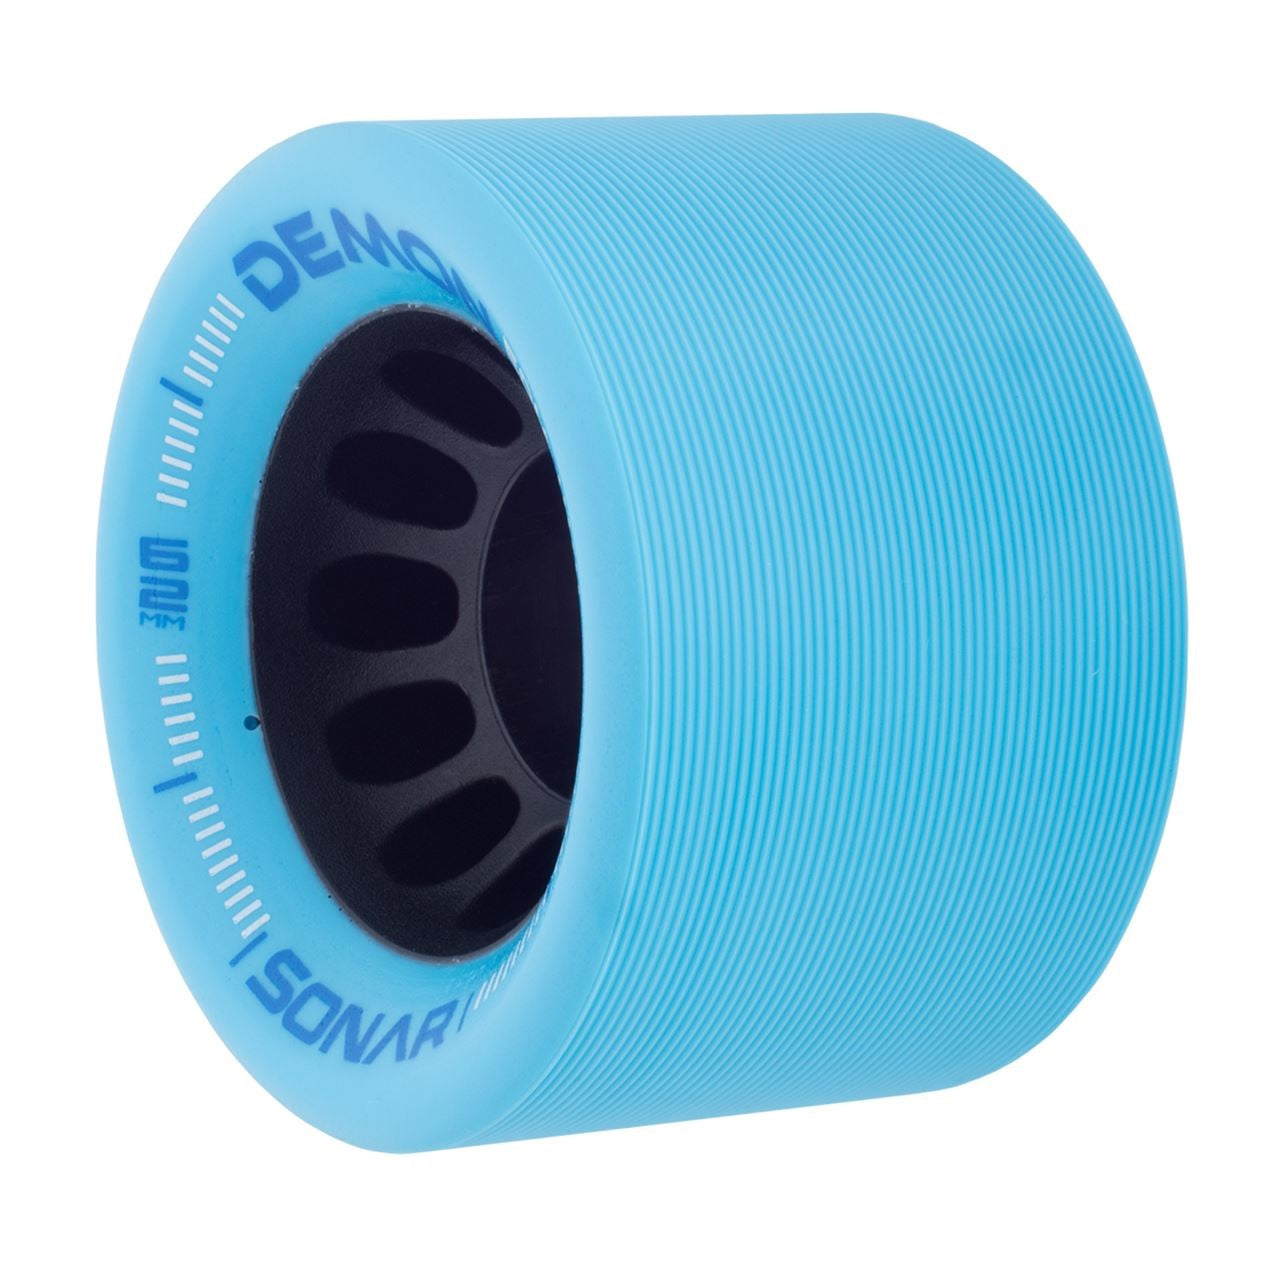 Sonar Demon EDM Ruedas para patines en color azul cielo, 62 mm, 95 a, juego de 4